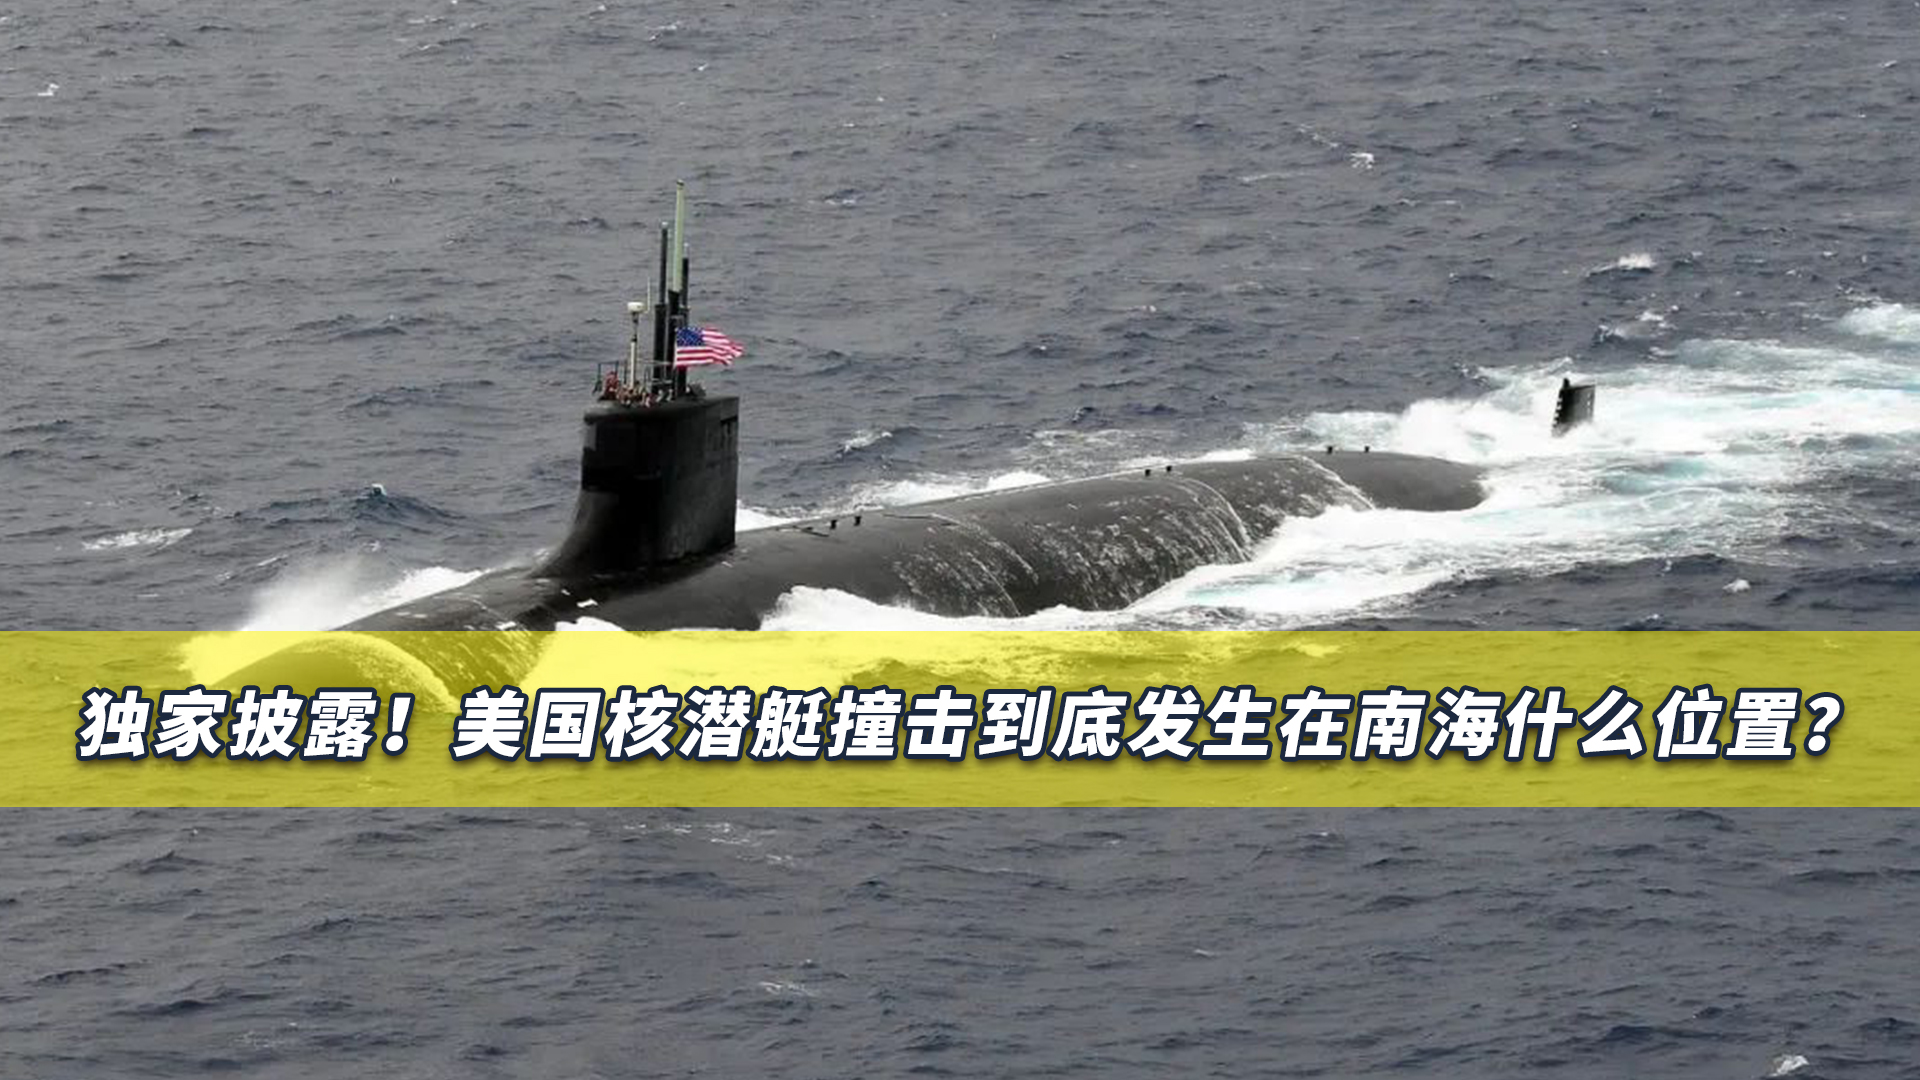 美海军新型核潜艇训练时突然爆炸全体官兵死亡(组图)